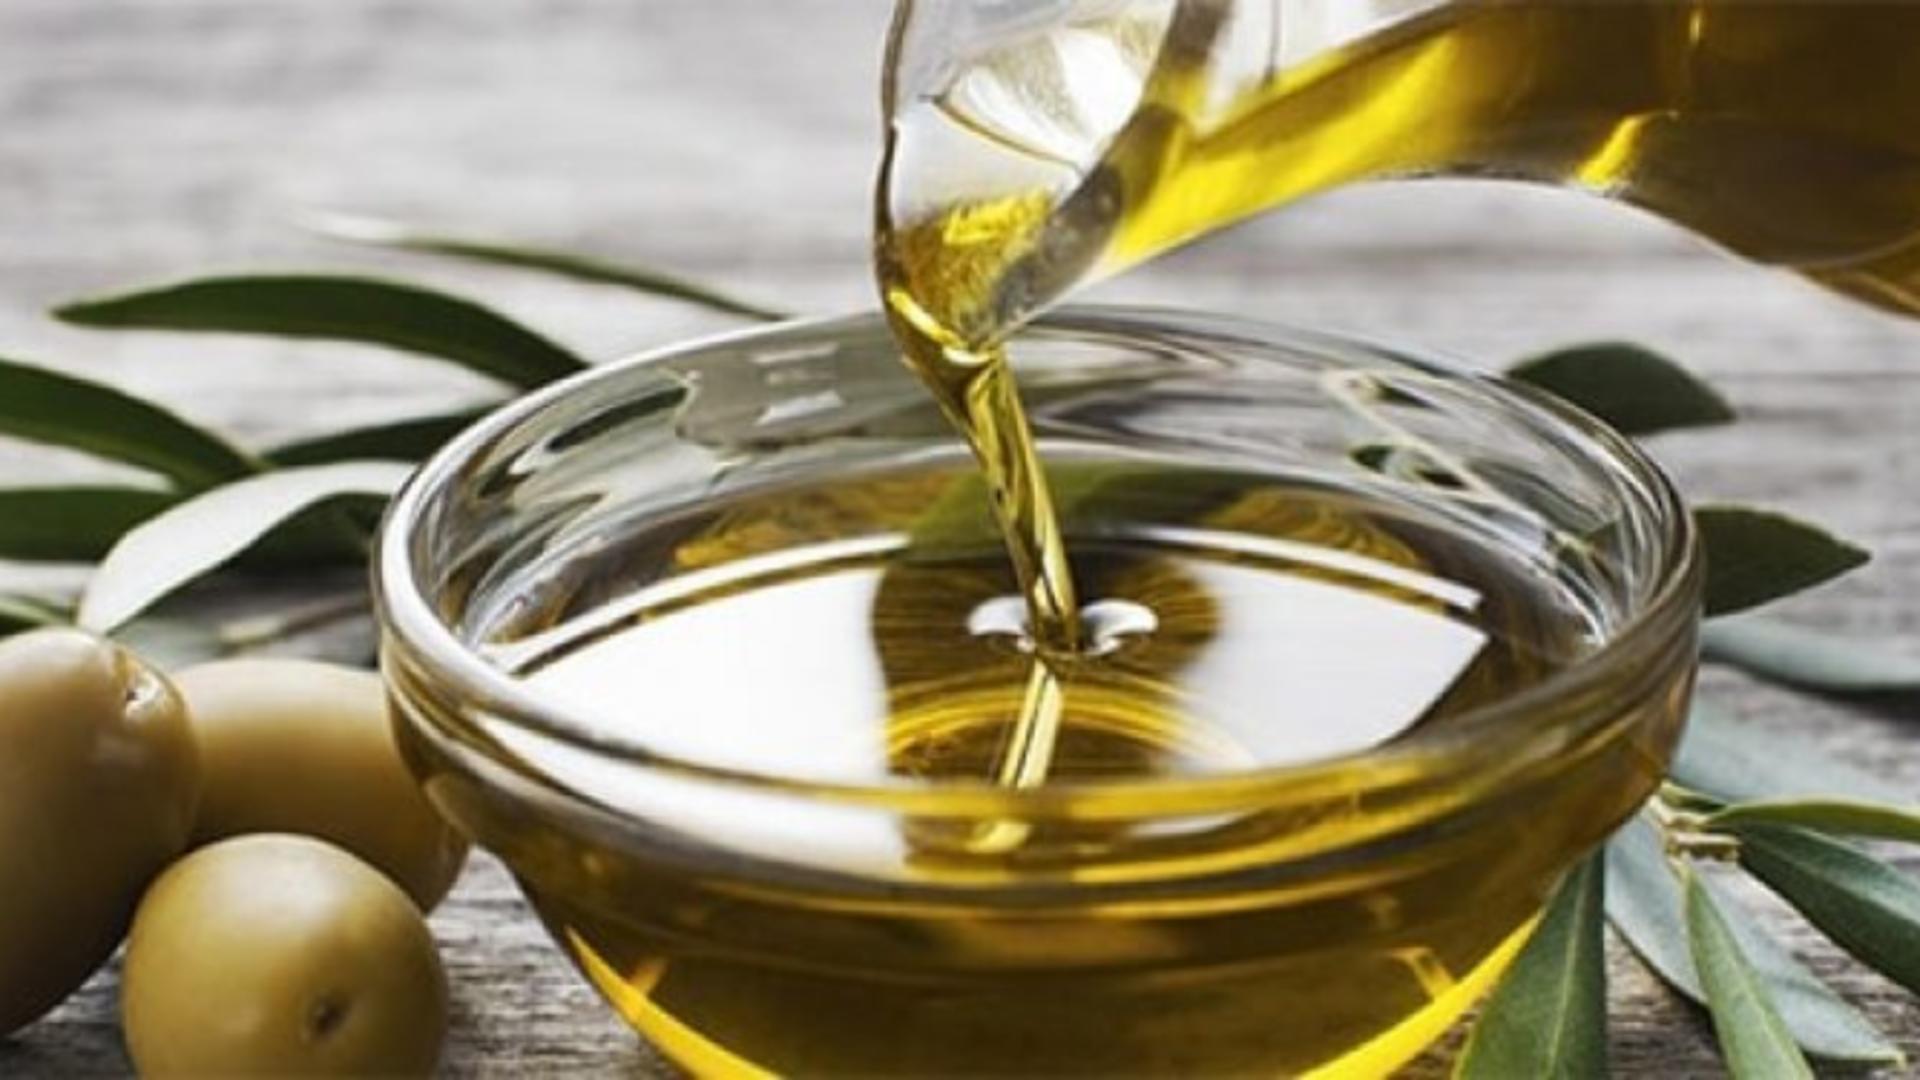 Pericolul din uleiul de măsline – În timp ce toată lumea laudă calitățile sale, există și riscuri mai puțin cunoscute